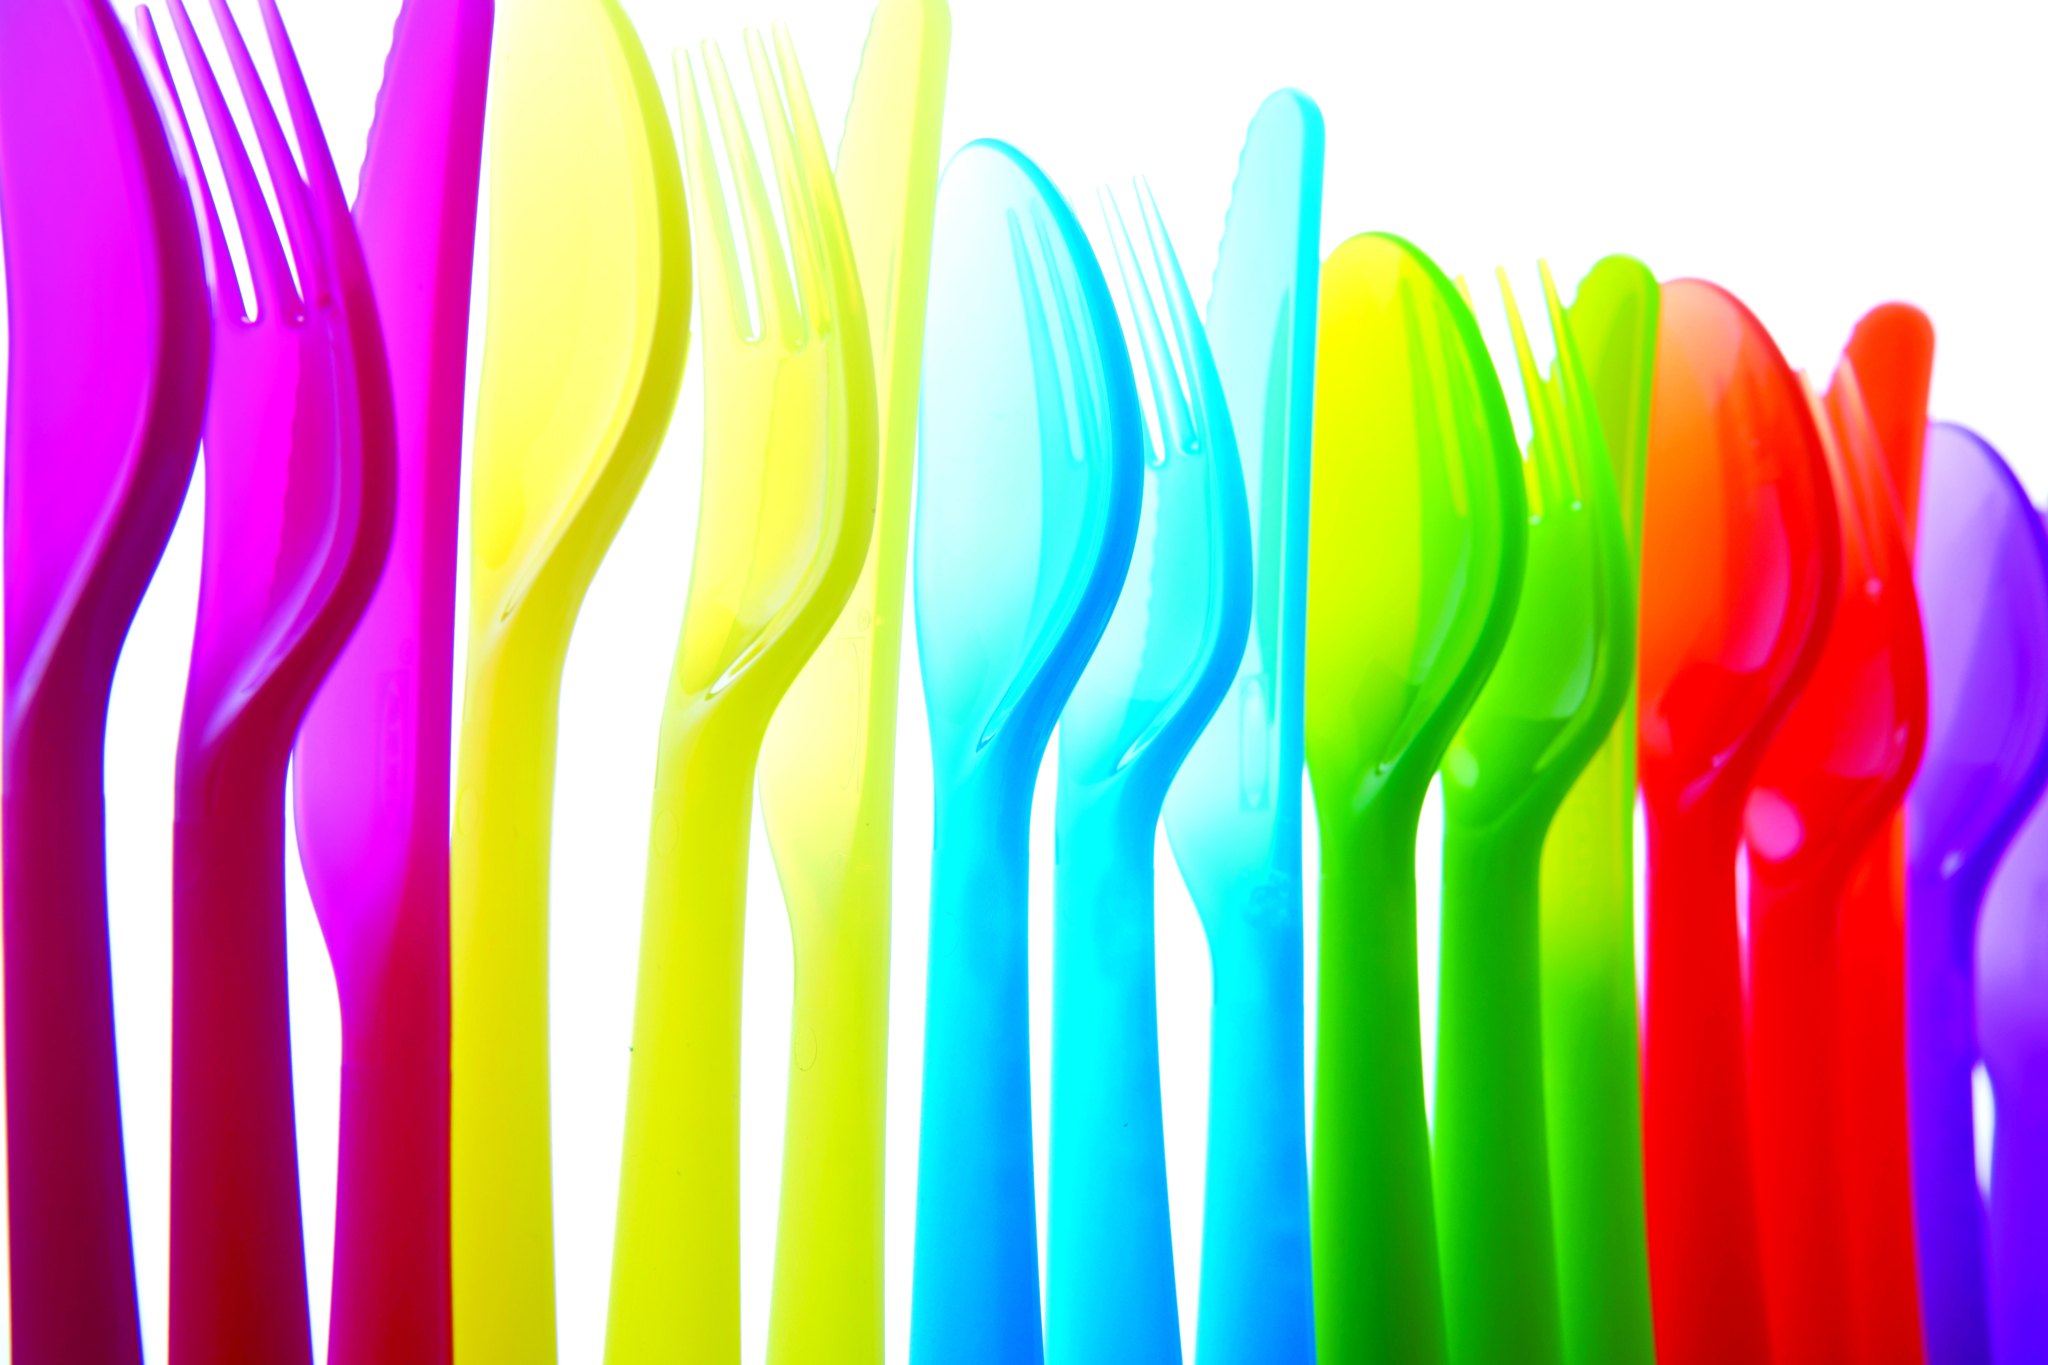 stock illustration of plastic utensils